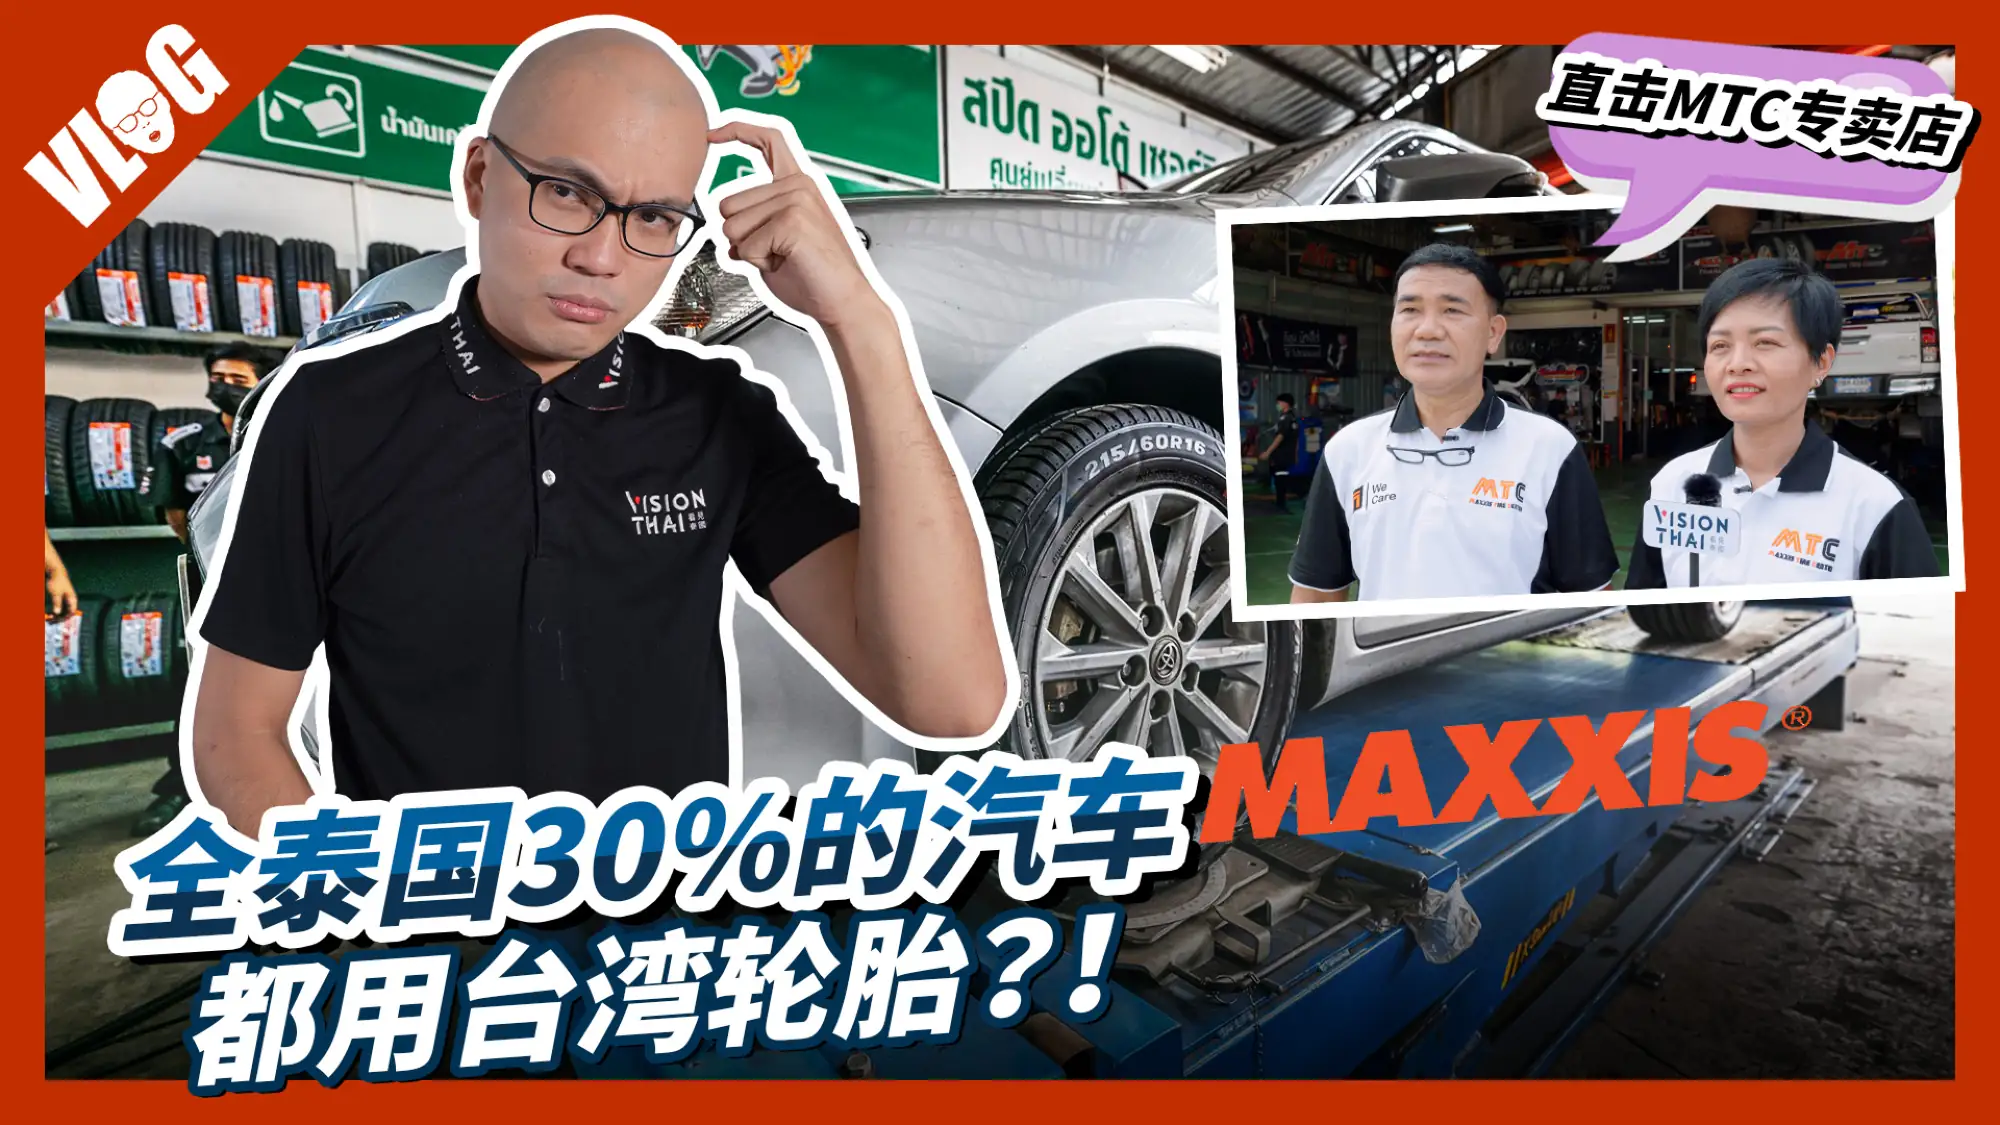 泰國汽車輪胎3成用台灣品牌瑪吉斯 黑熊解祕成功之道（Vision Thai 看見泰國）